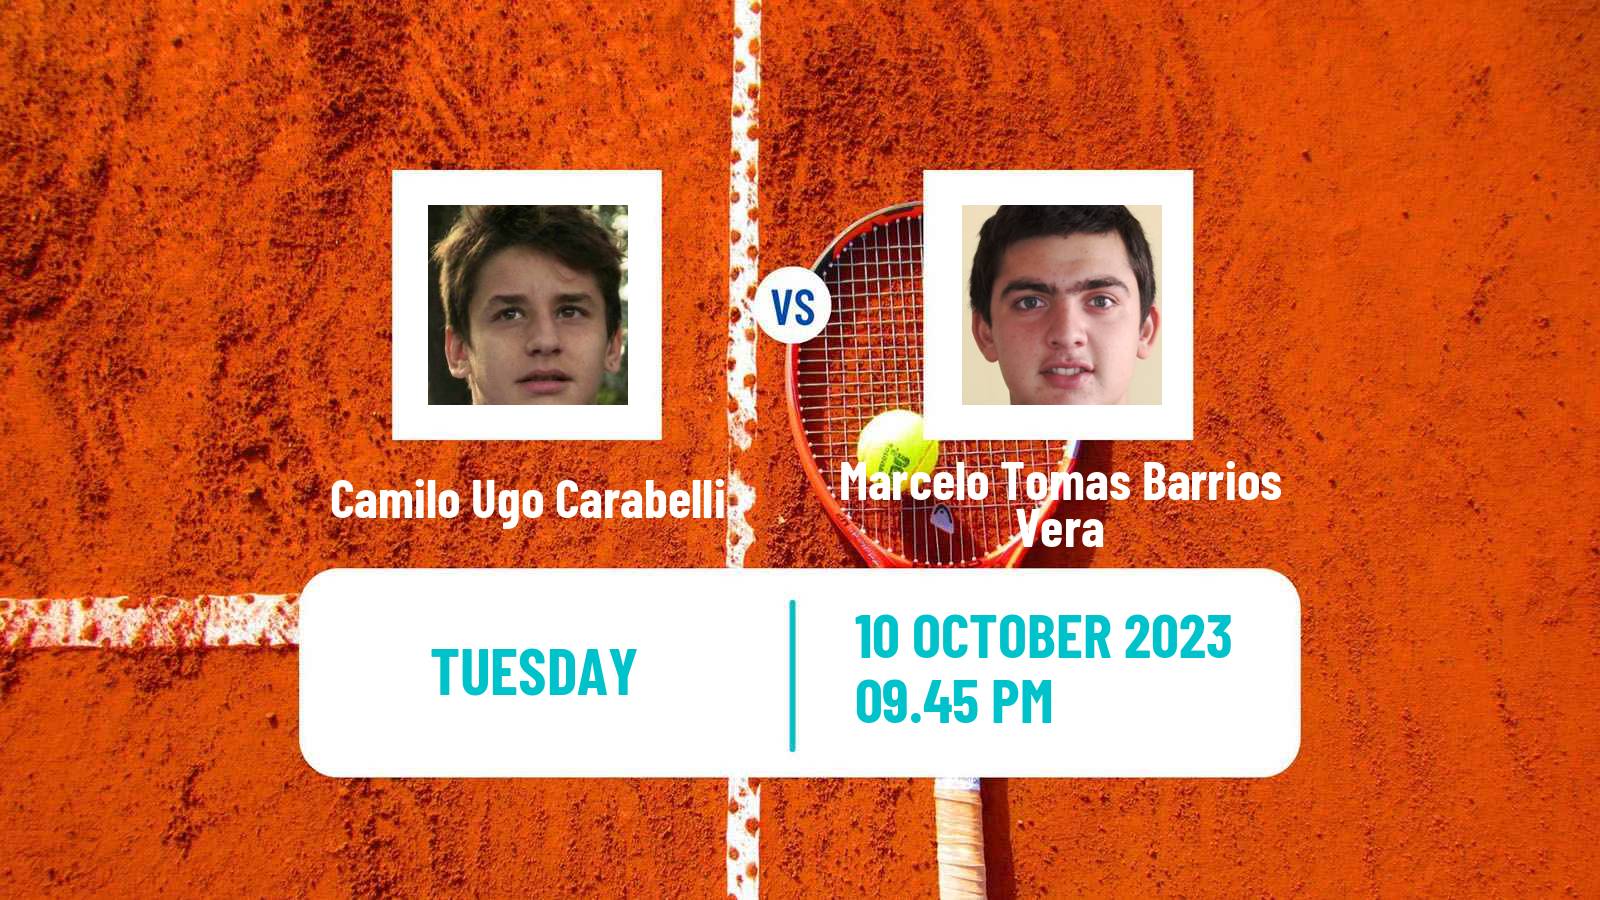 Tennis Buenos Aires 2 Challenger Men Camilo Ugo Carabelli - Marcelo Tomas Barrios Vera